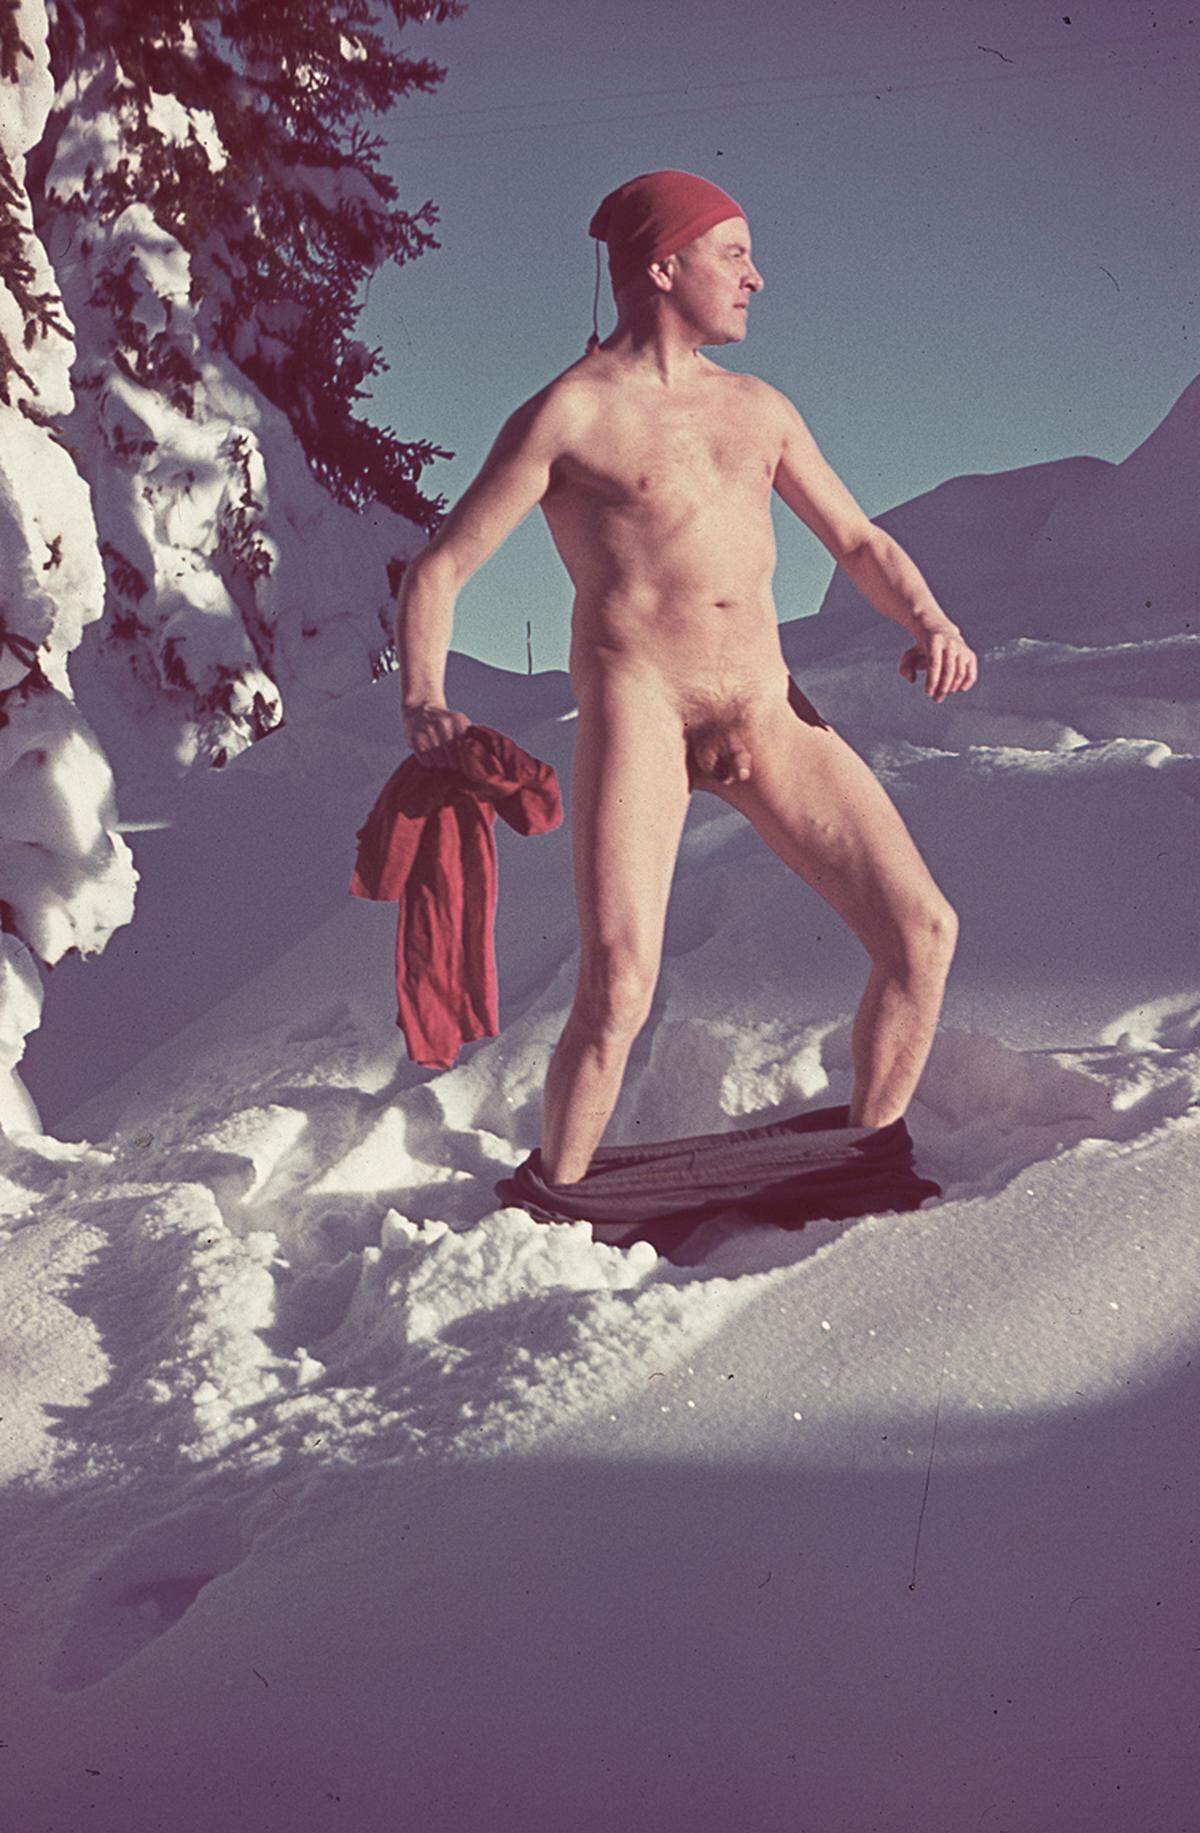 Aber auch ein Selbstporträt findet sich in der Schau: Alfons Walde um 1940, bis auf eine rote Wollmütze nackt mit heruntergelassener Hose - im Schnee.Alfons Walde: Selbstporträt, um 1940